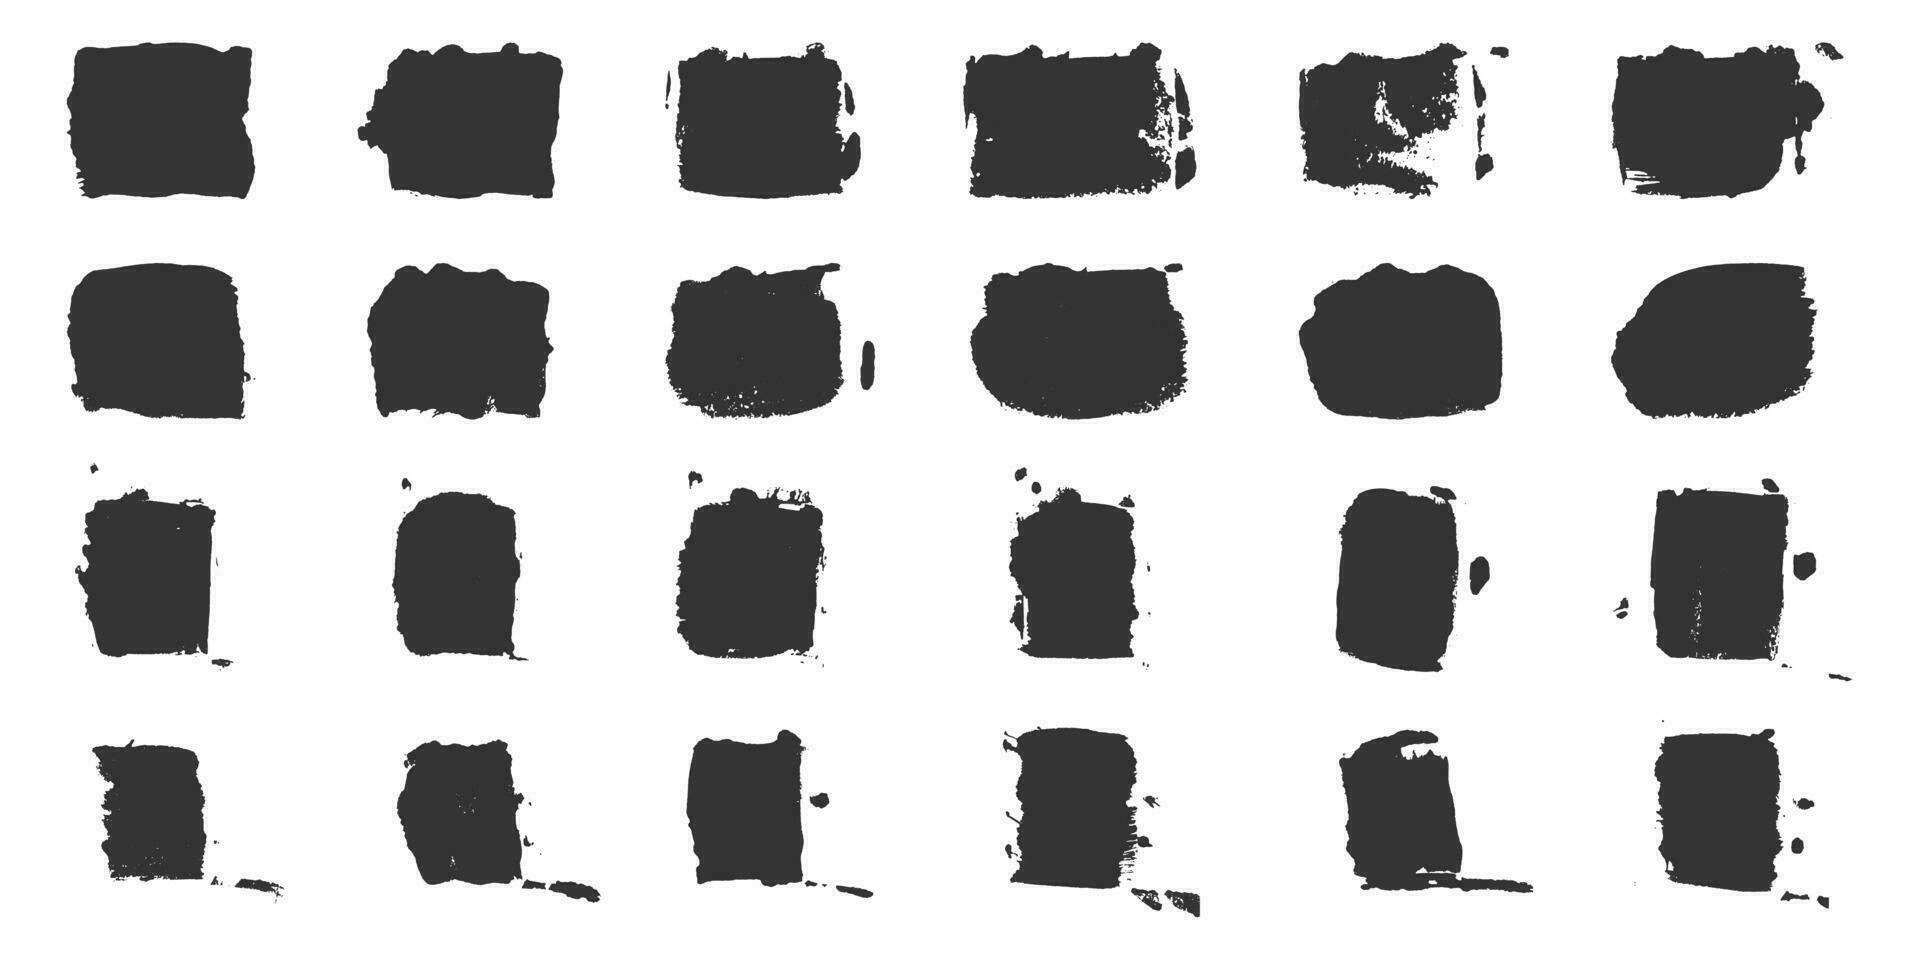 borstel grunge in plein vorm geven aan. zwart sjabloon achtergrond verzameling. inkt rechthoek, penseel ruw textuur. penseelstreek met abstract grens. abstract grafisch element. geïsoleerd vector illustratie.